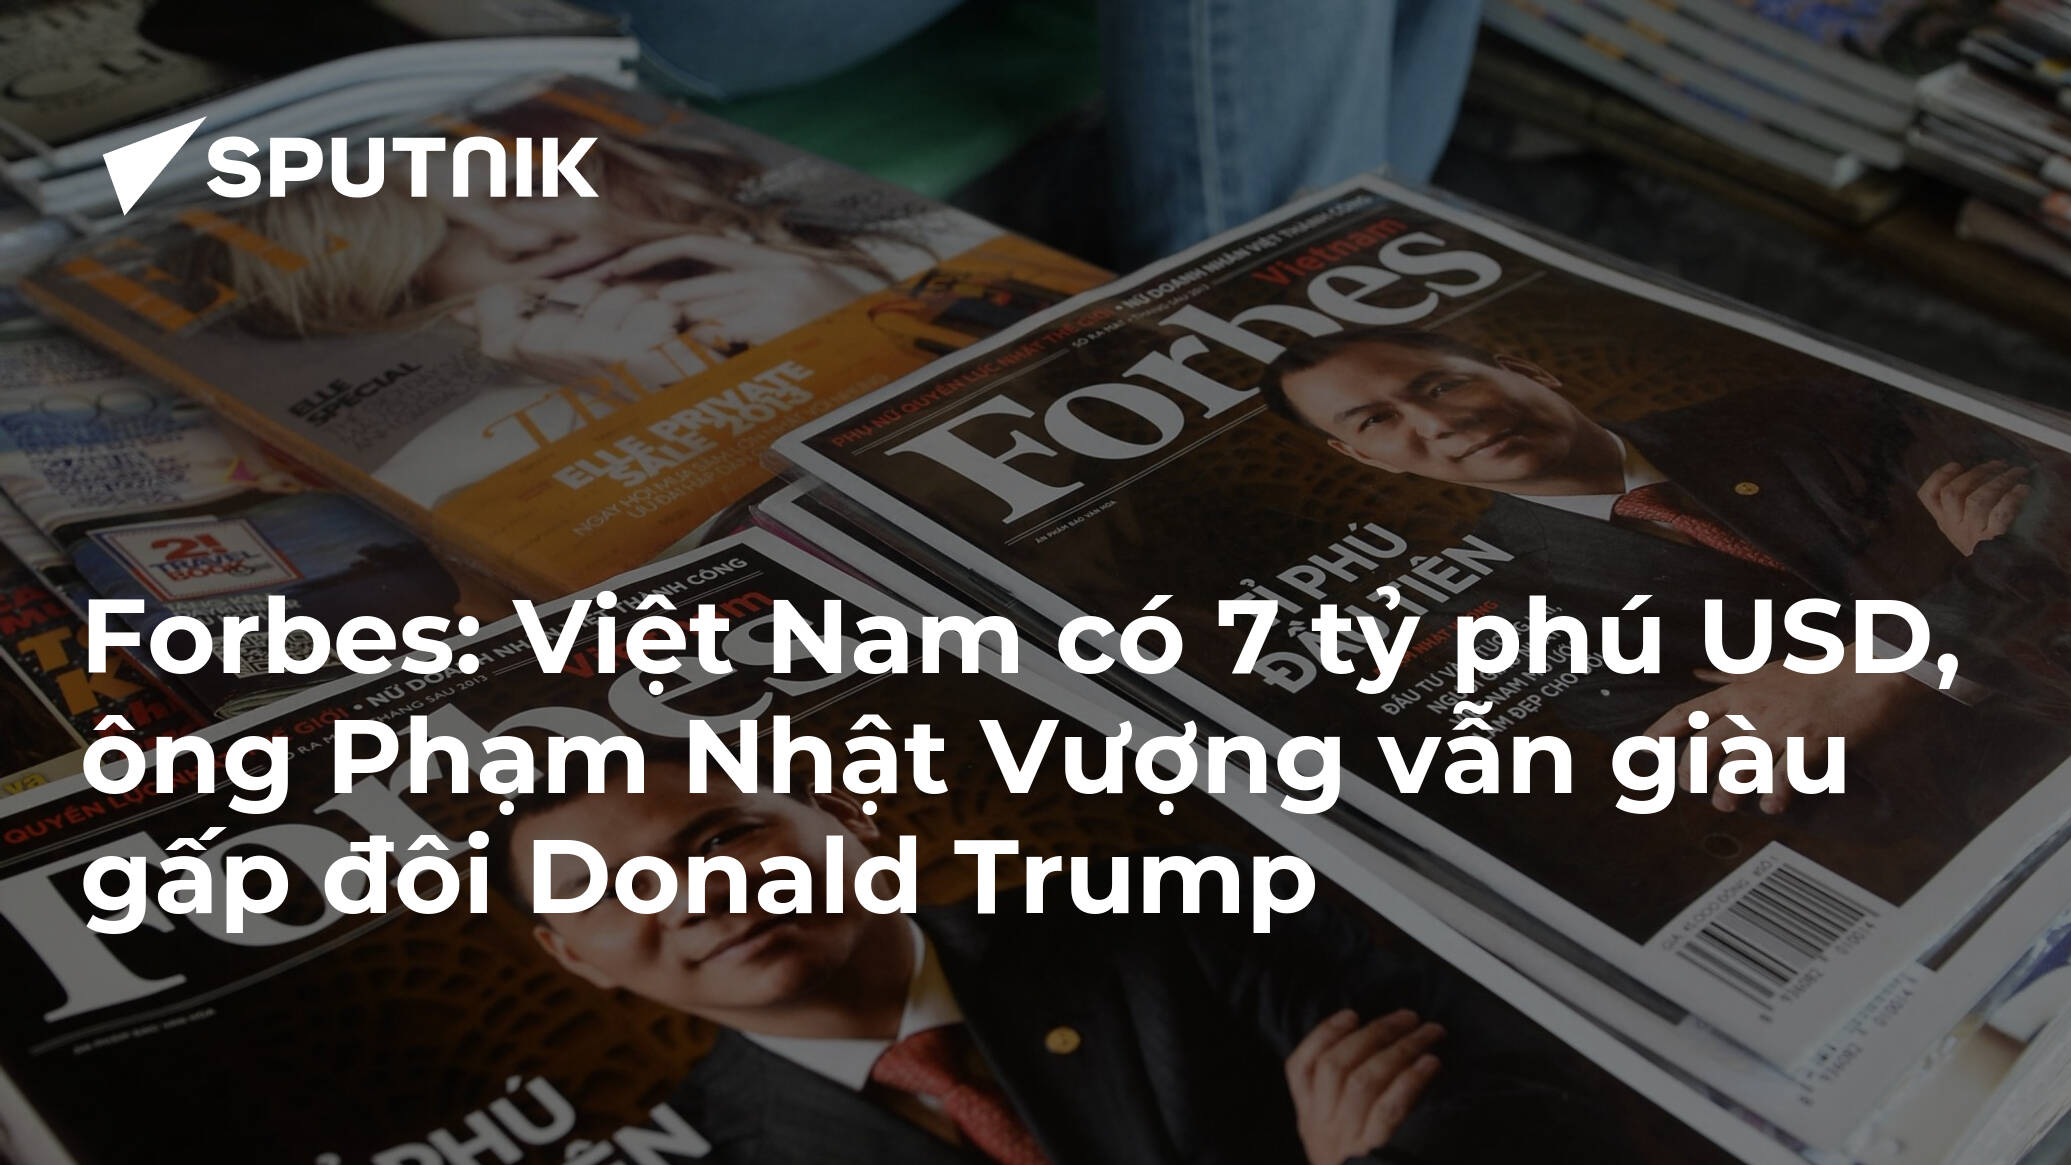 Forbes: Việt Nam có 7 tỷ phú USD, ông Phạm Nhật Vượng vẫn giàu gấp đôi Donald Trump